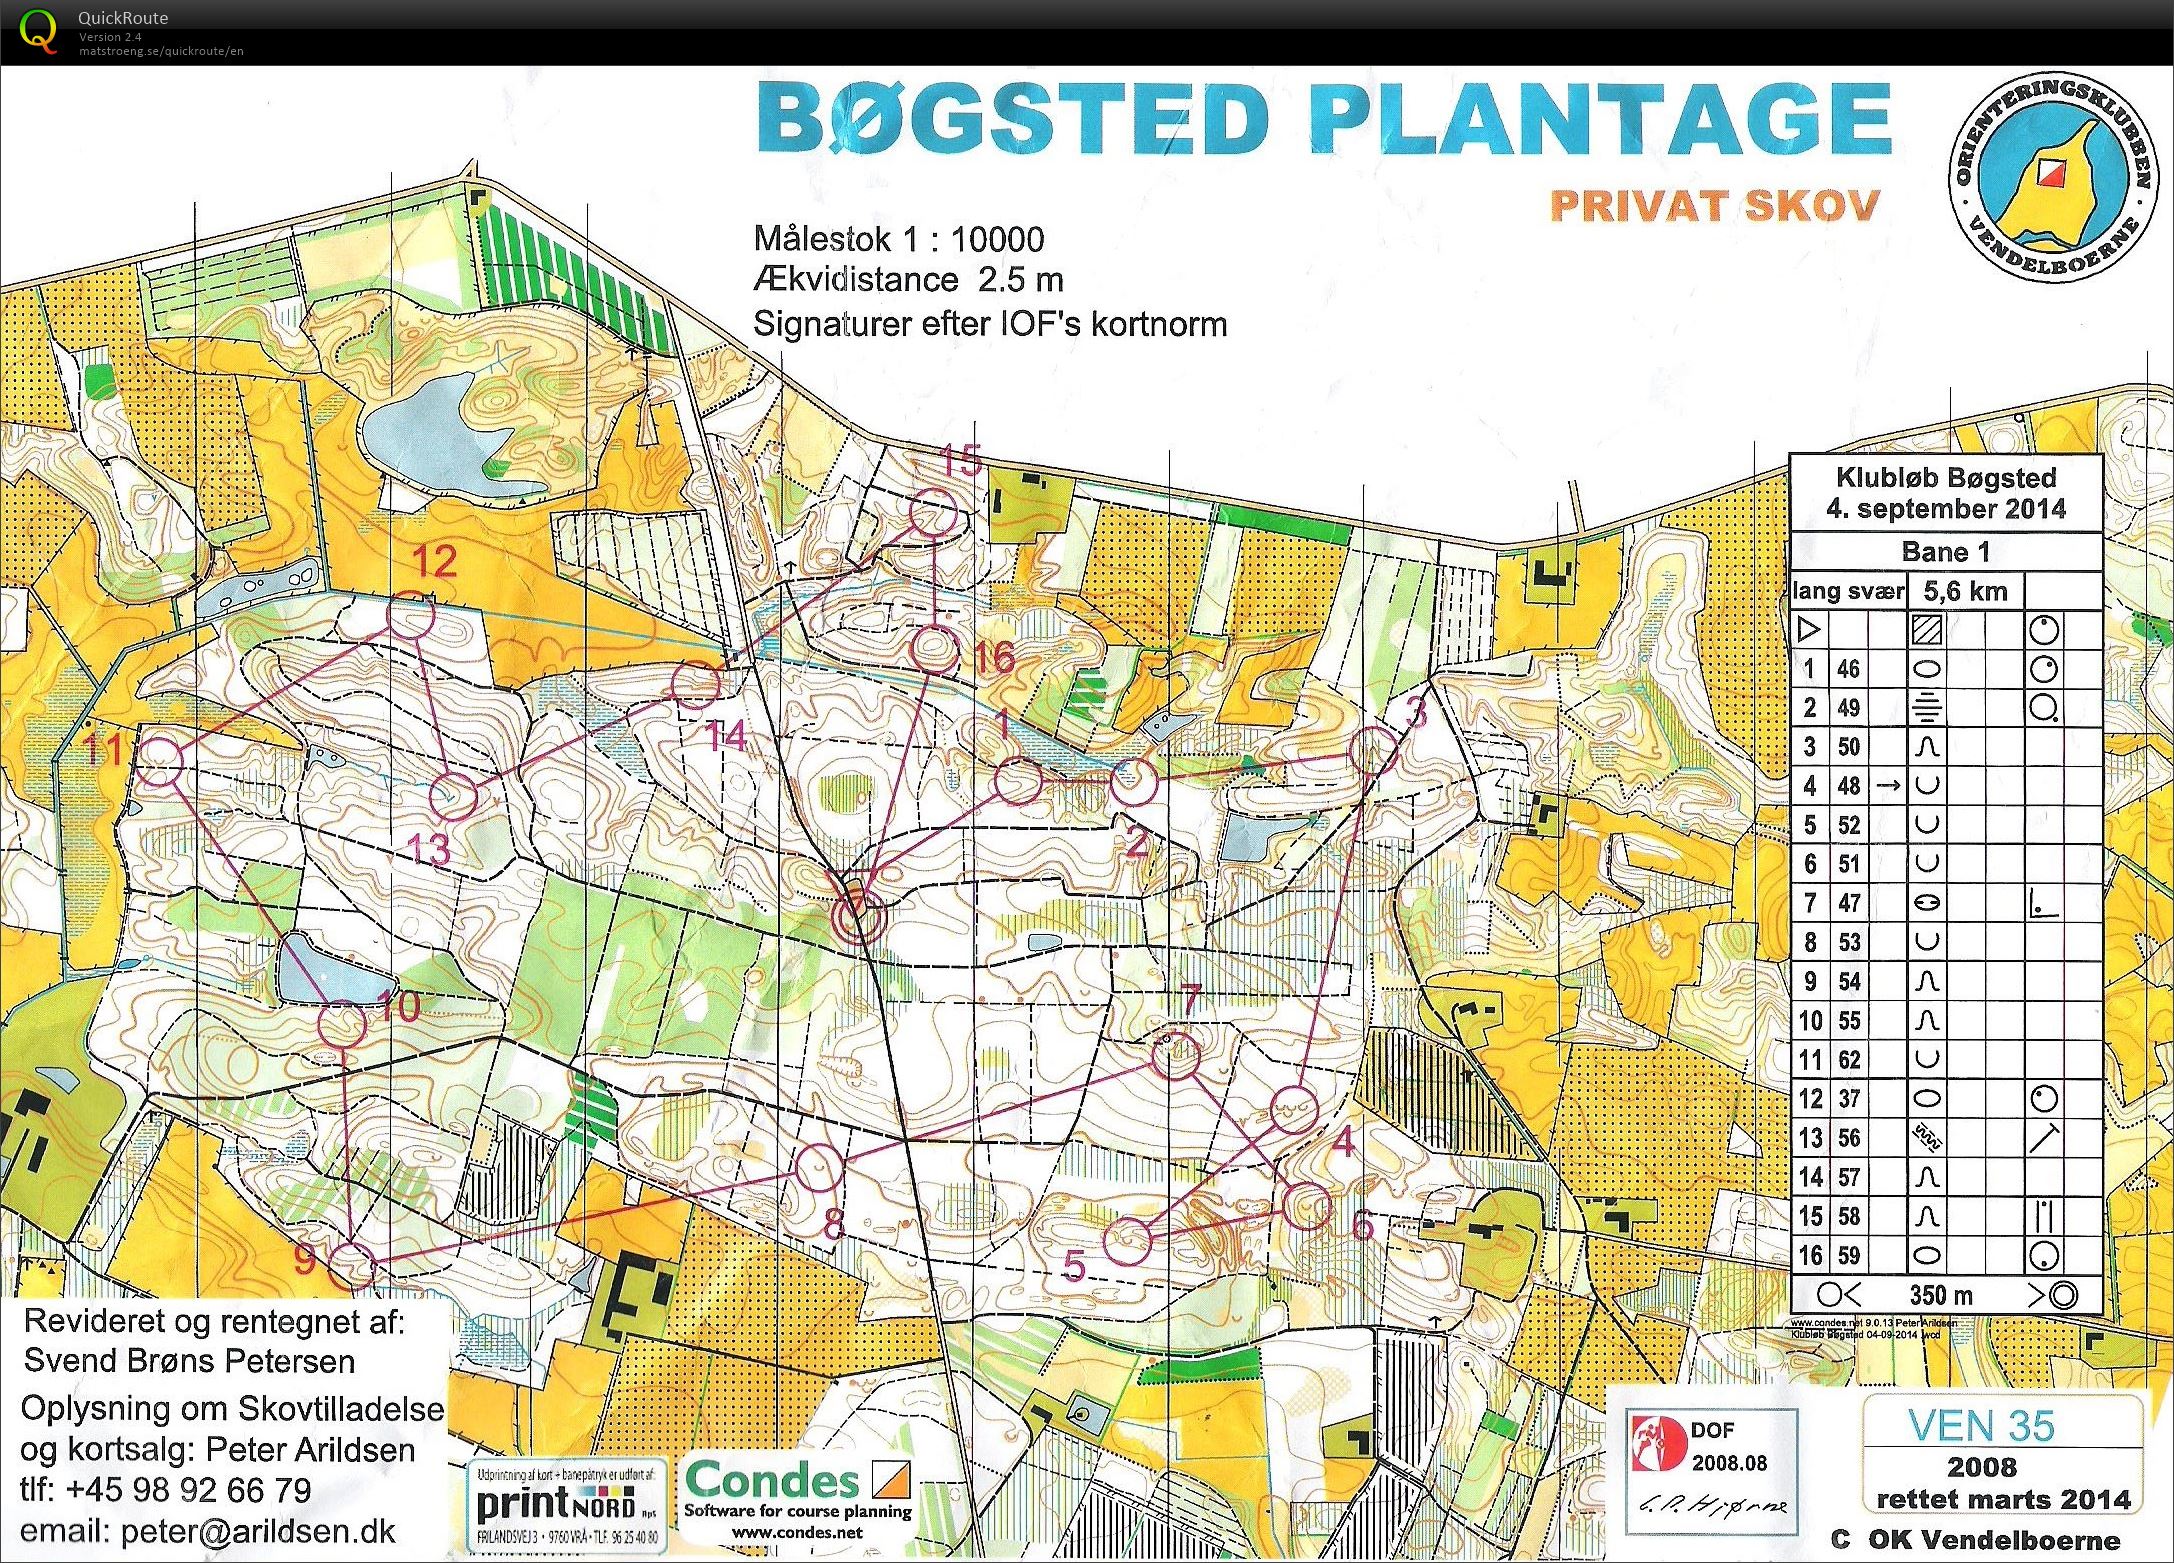 Bøgsted Plantage - Bane 1 (04/09/2014)